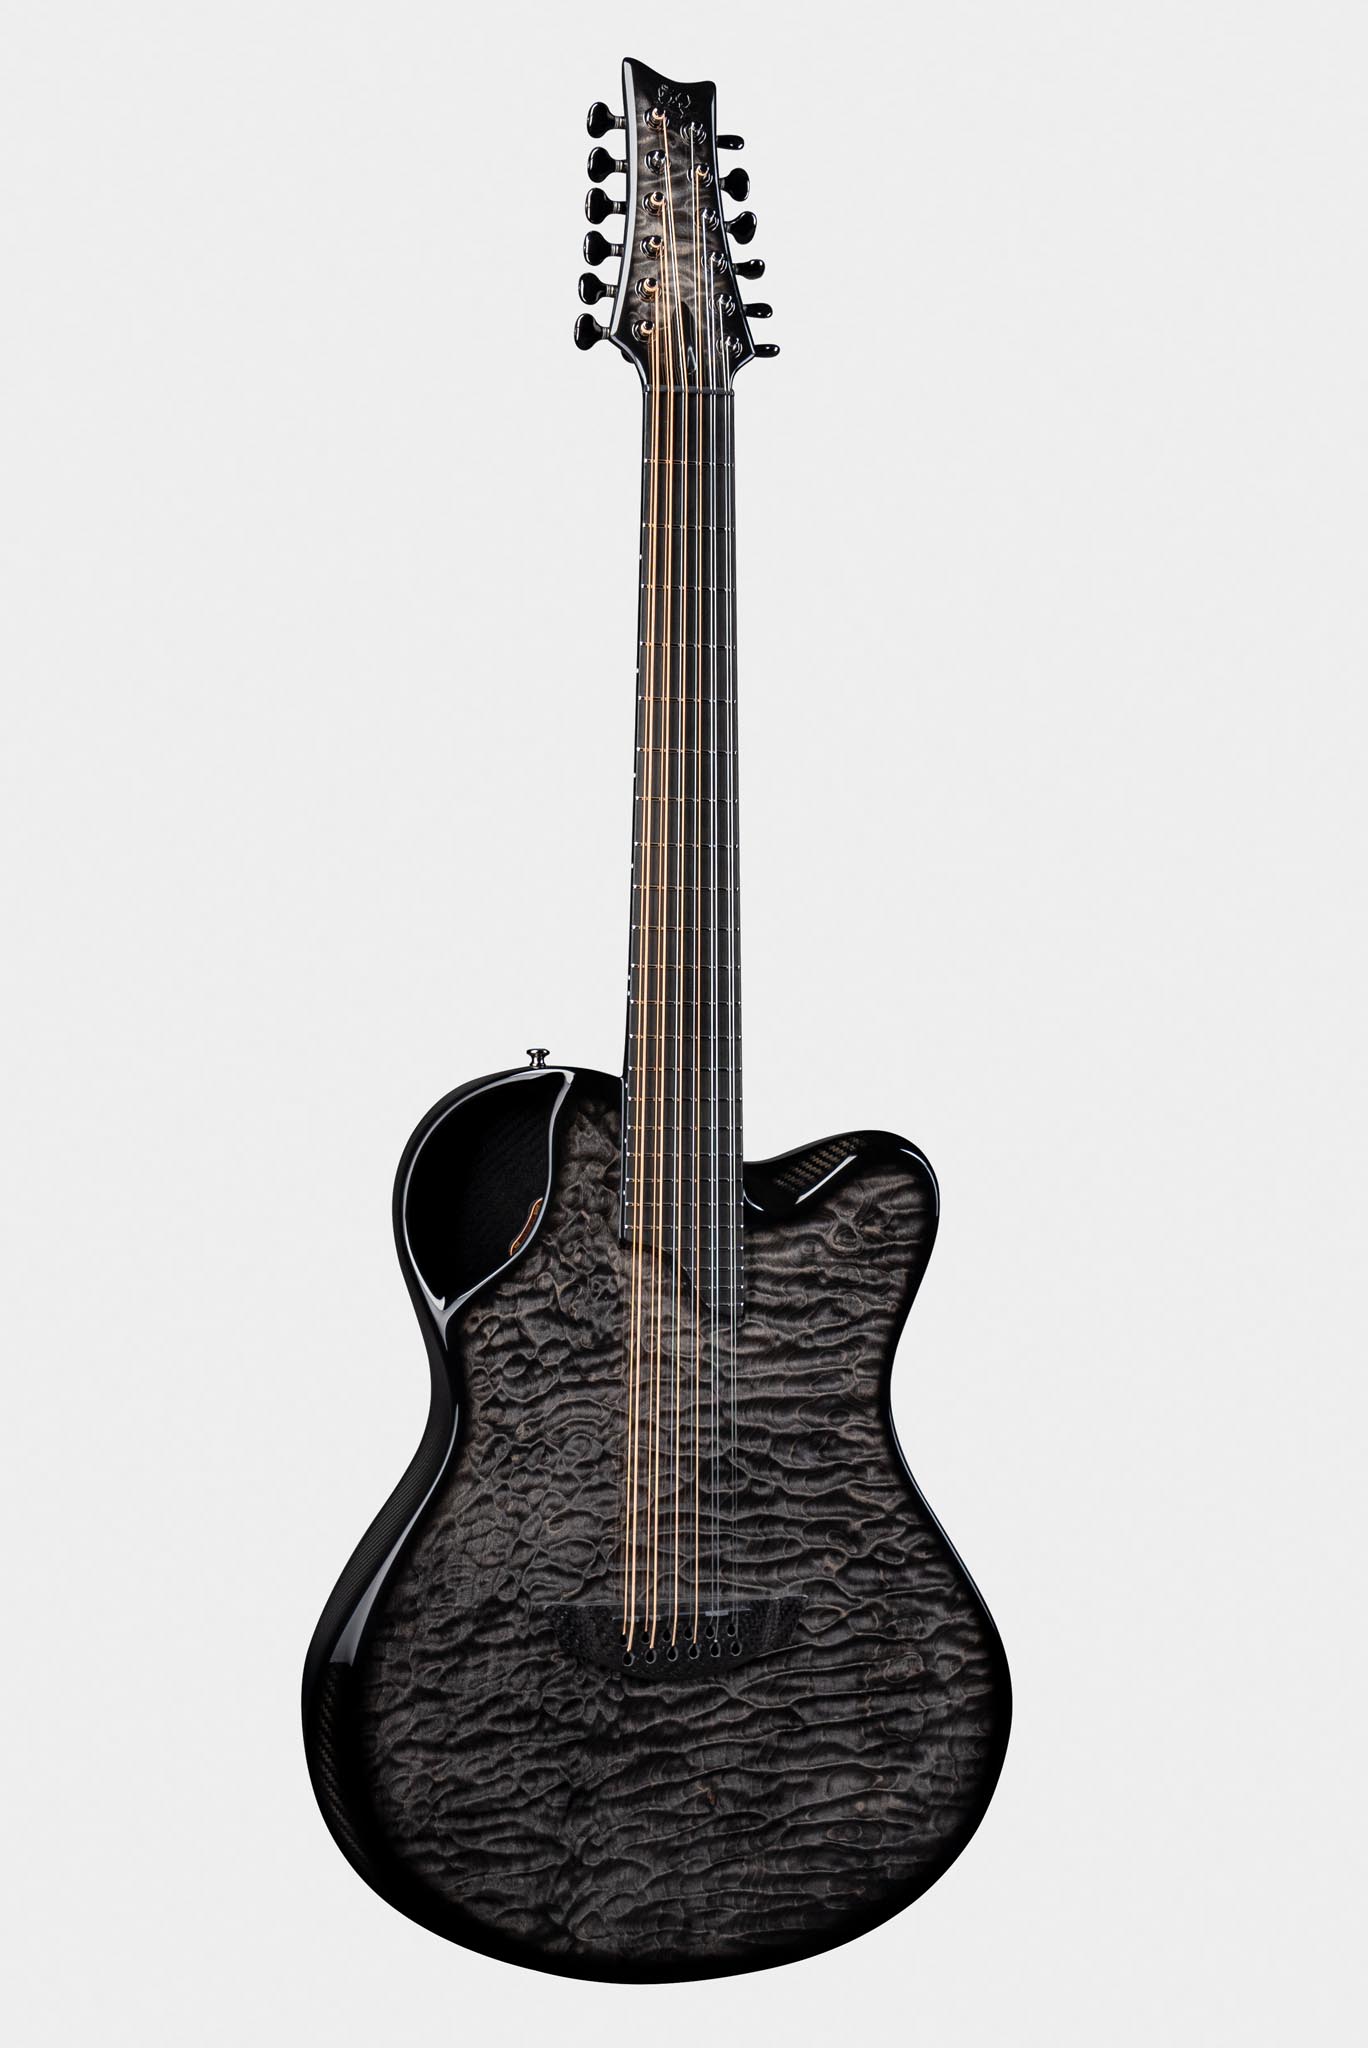 Emerald X20-12 Black Guitar Made of Carbon Fiber